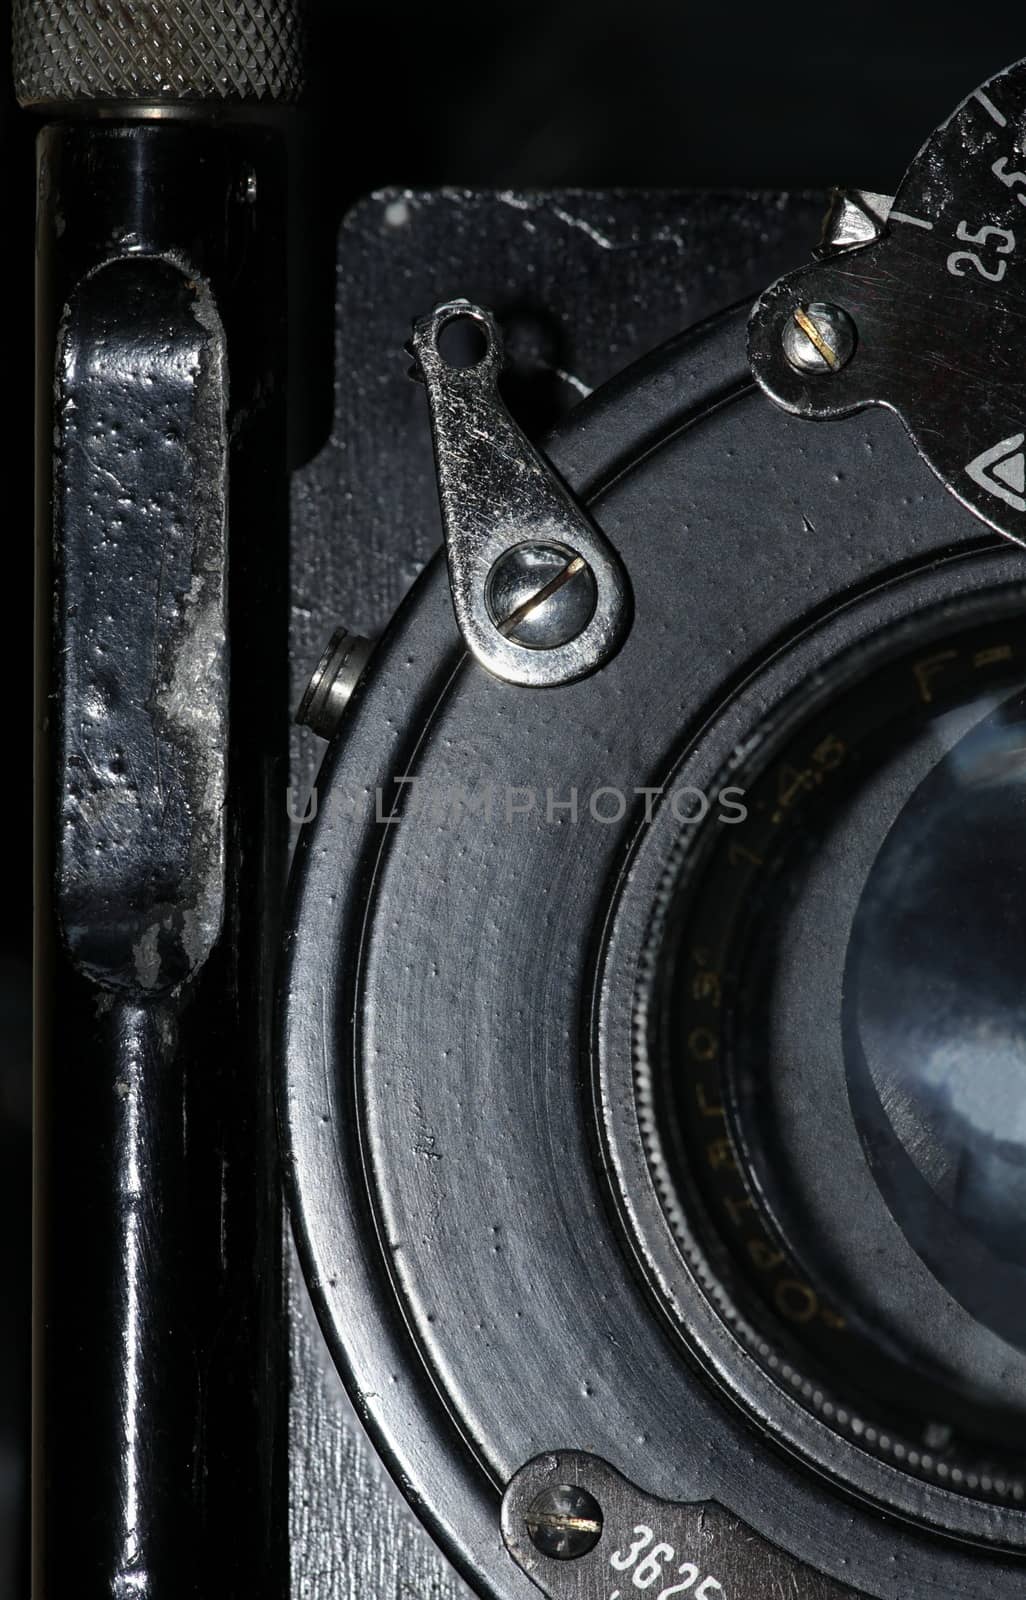 Camera Lens of old film camera macro shot